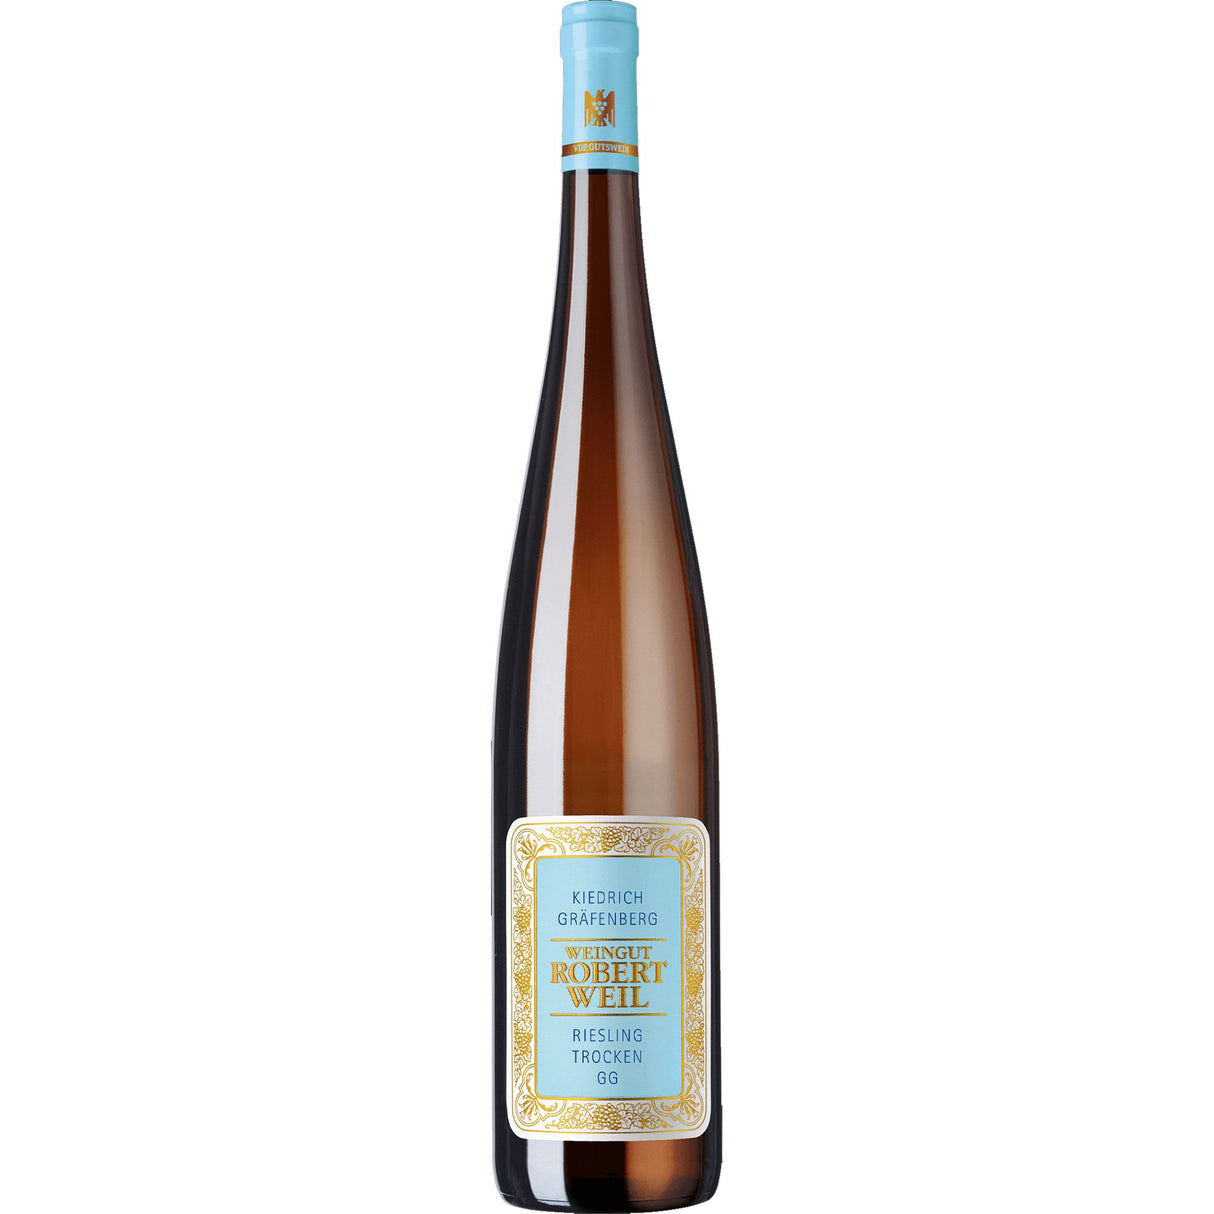 Robert Weil Kiedrich Gräfenberg Grosses Gewächs Riesling Trocken 2021 (1500ml)-White Wine-World Wine